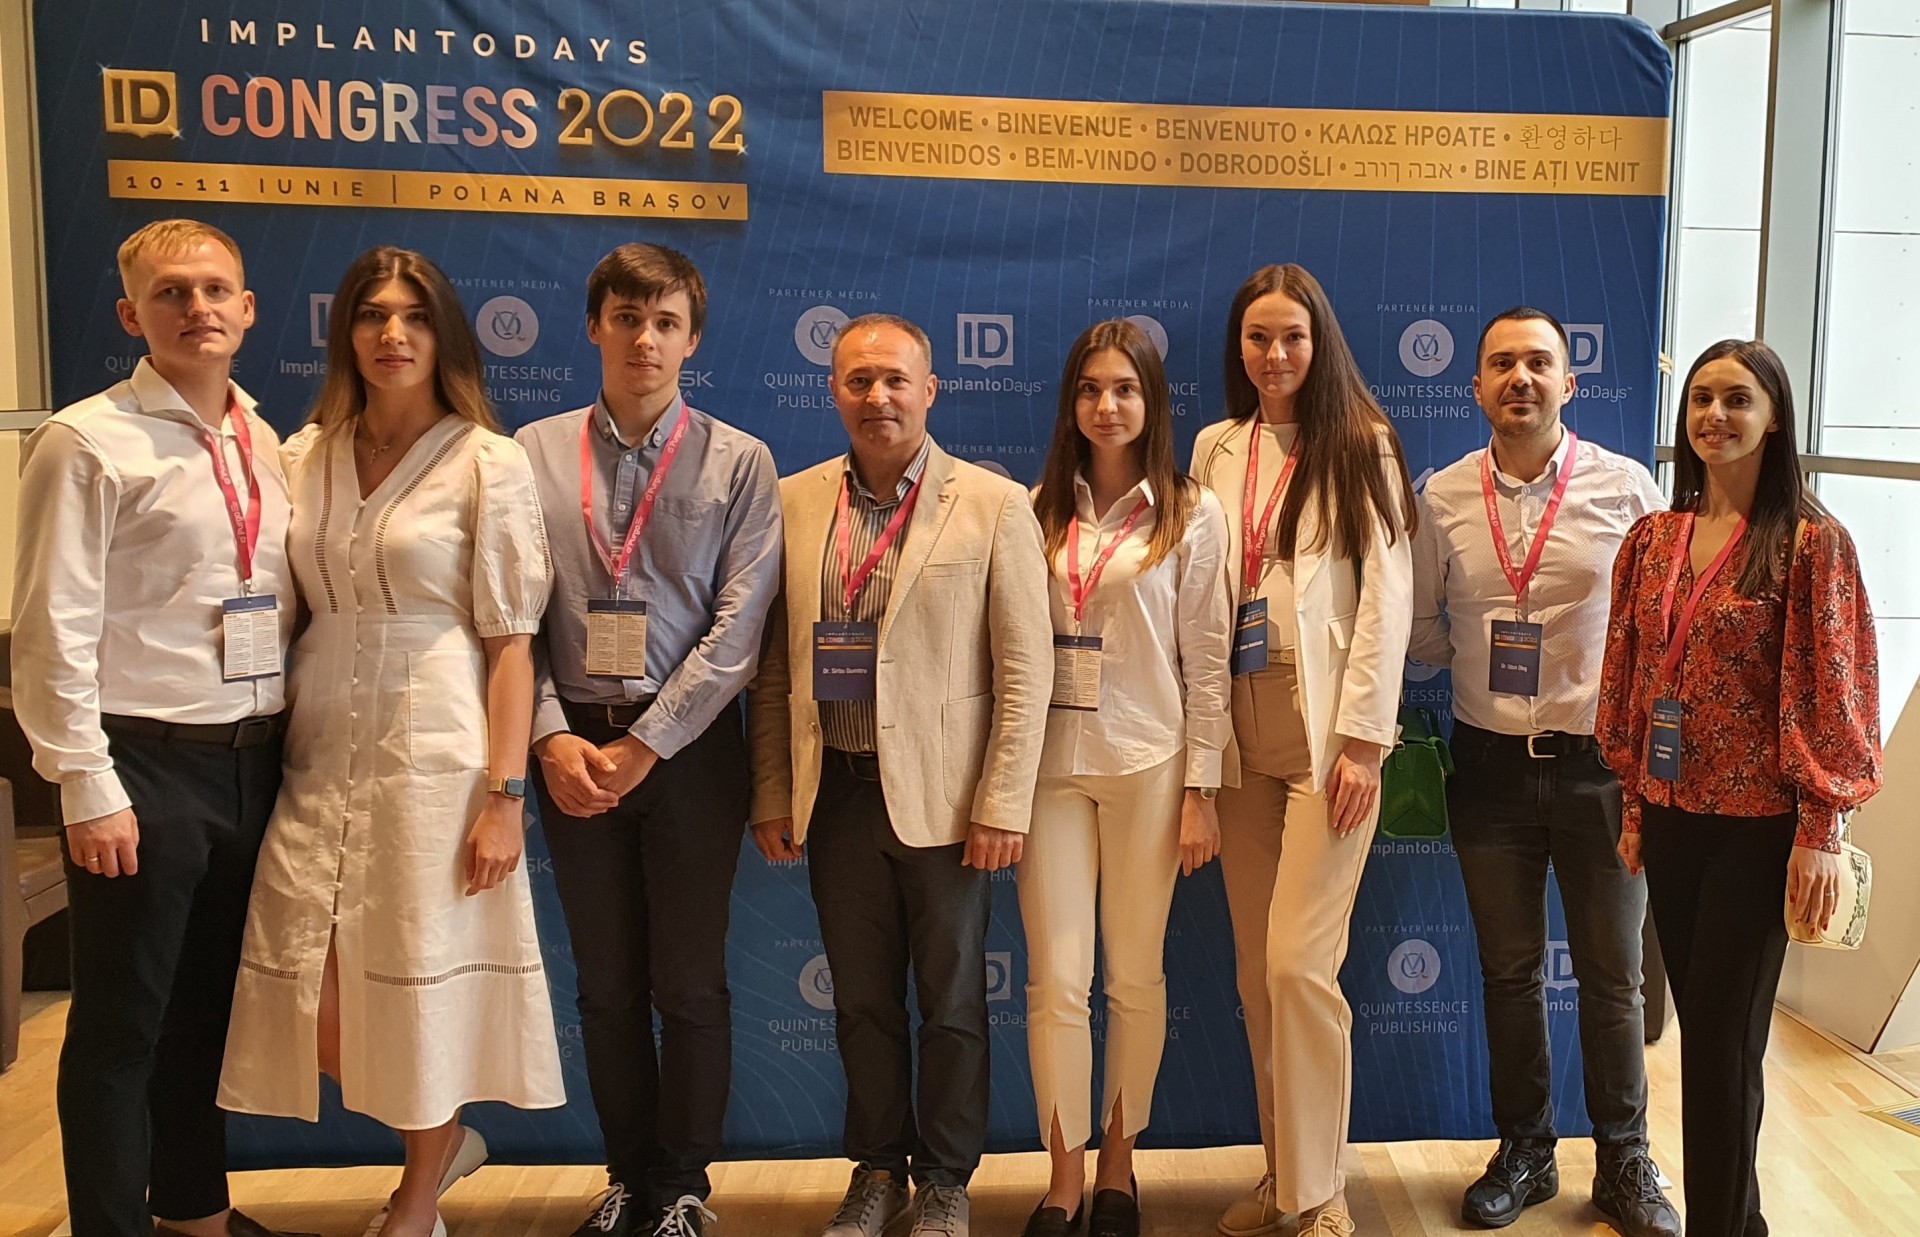 Colaboratorii Clinici stomatologice ”Omni Dent”, participanți la Congresul ImplantoDays 2022 